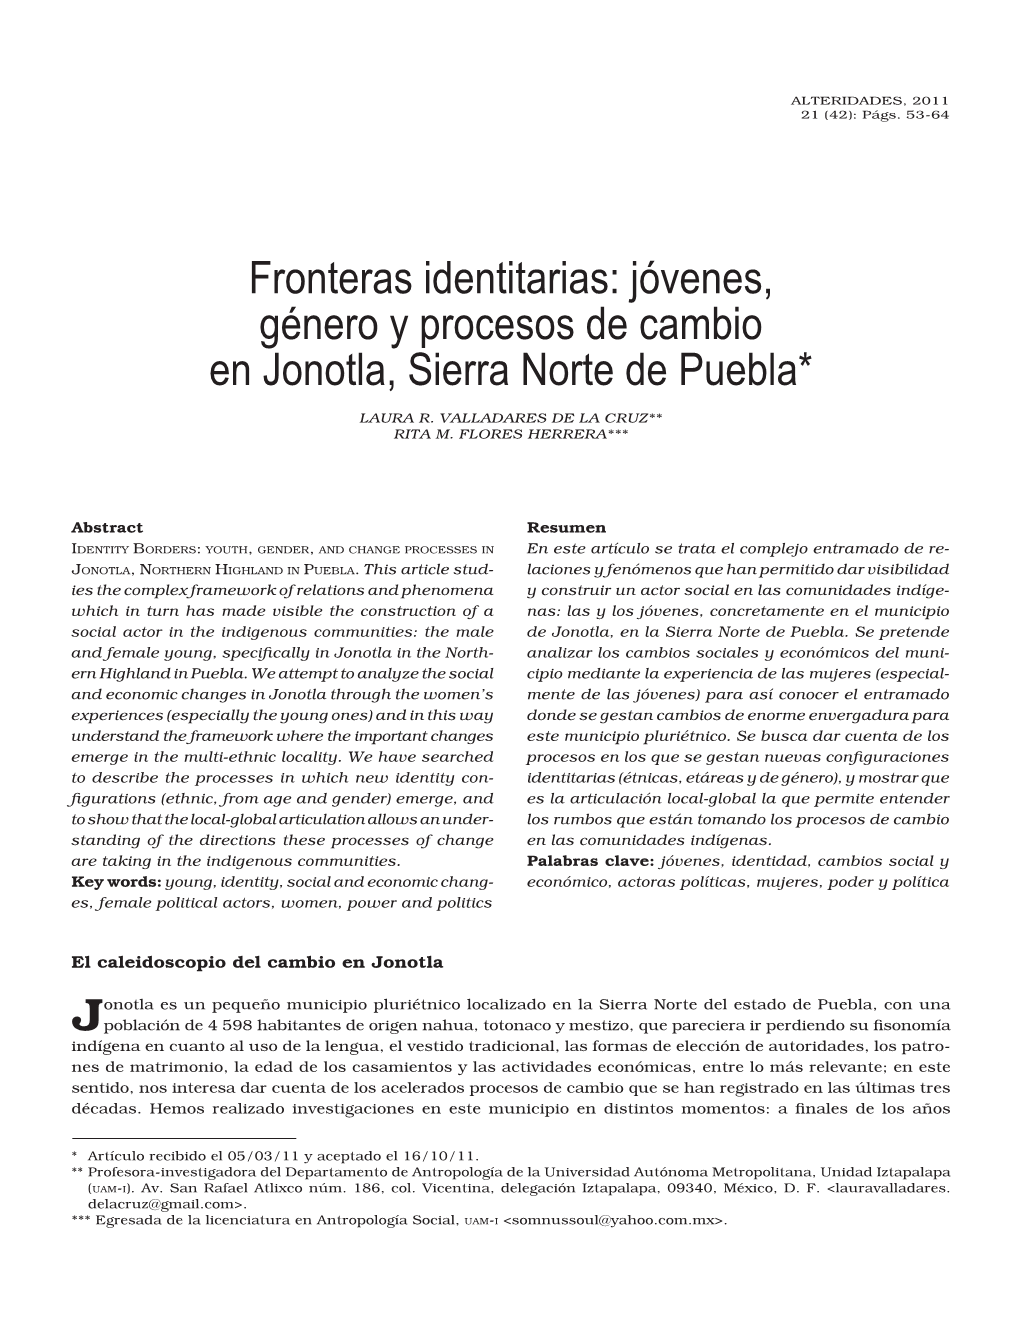 Jóvenes, Género Y Procesos De Cambio En Jonotla, Sierra Norte De Puebla*